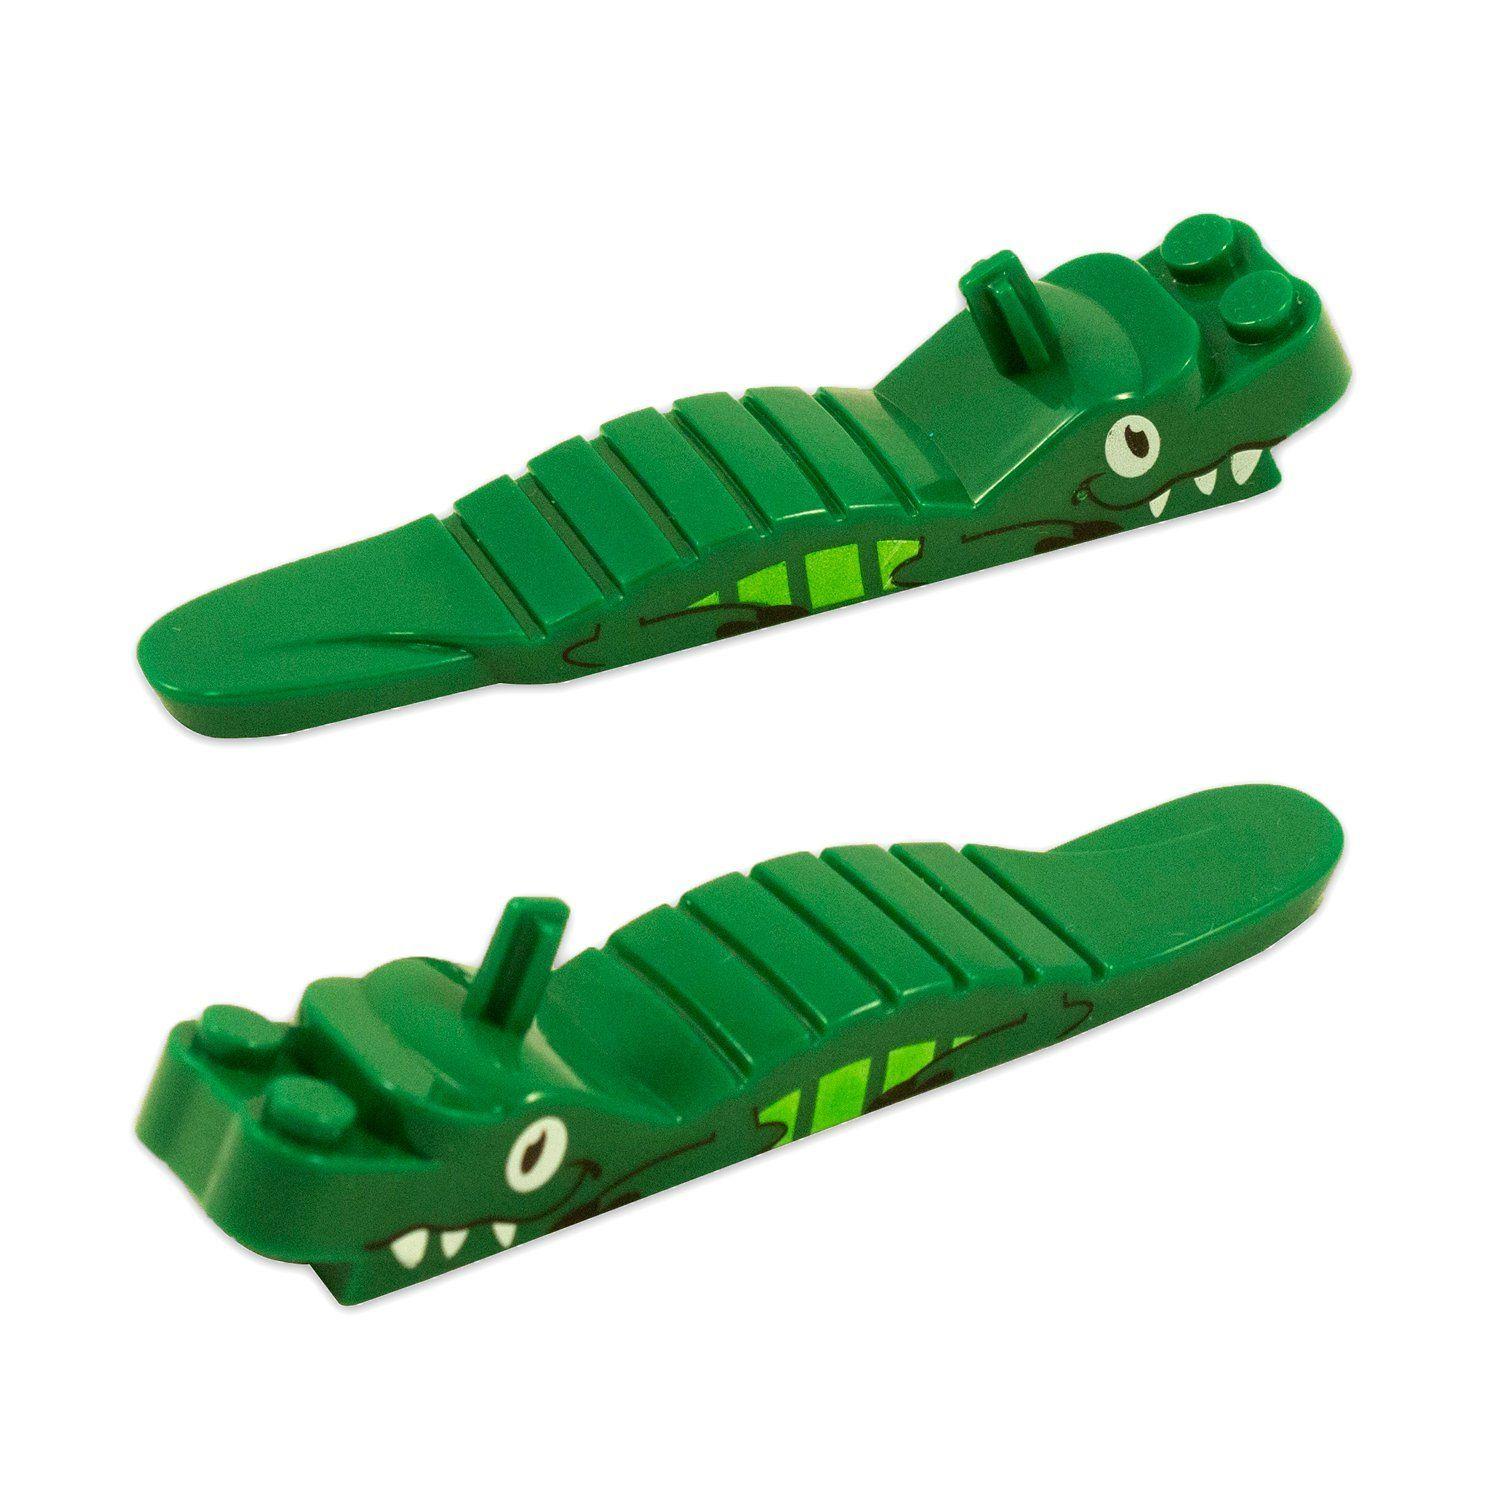 Green Alligator Logo - Cheap Green Alligator Logo, find Green Alligator Logo deals on line